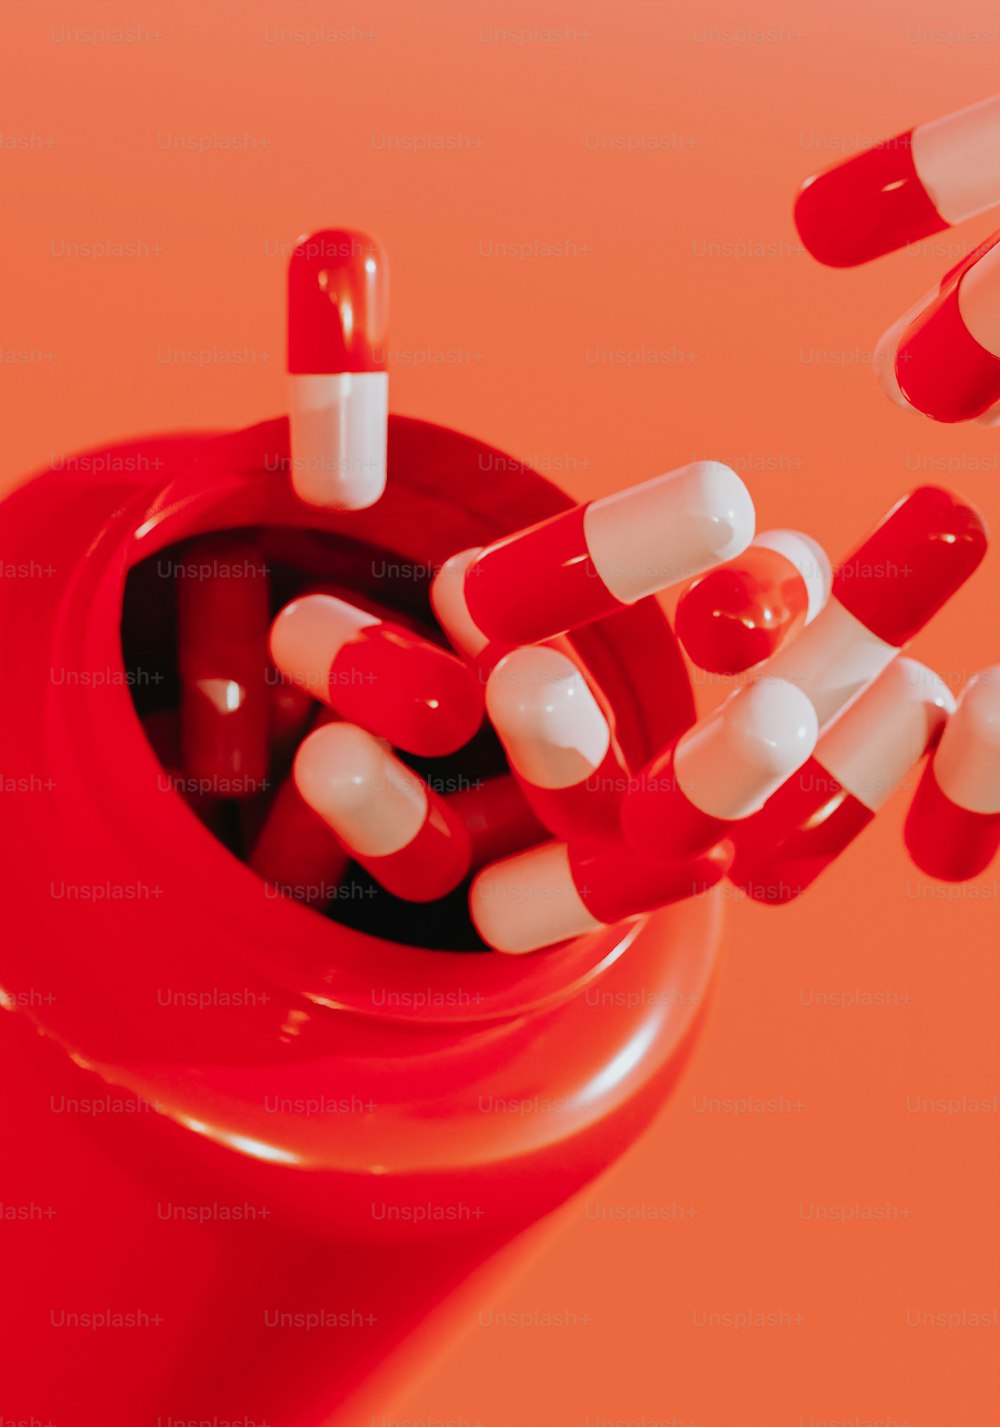 Un frasco de pastillas rojas lleno de pastillas blancas